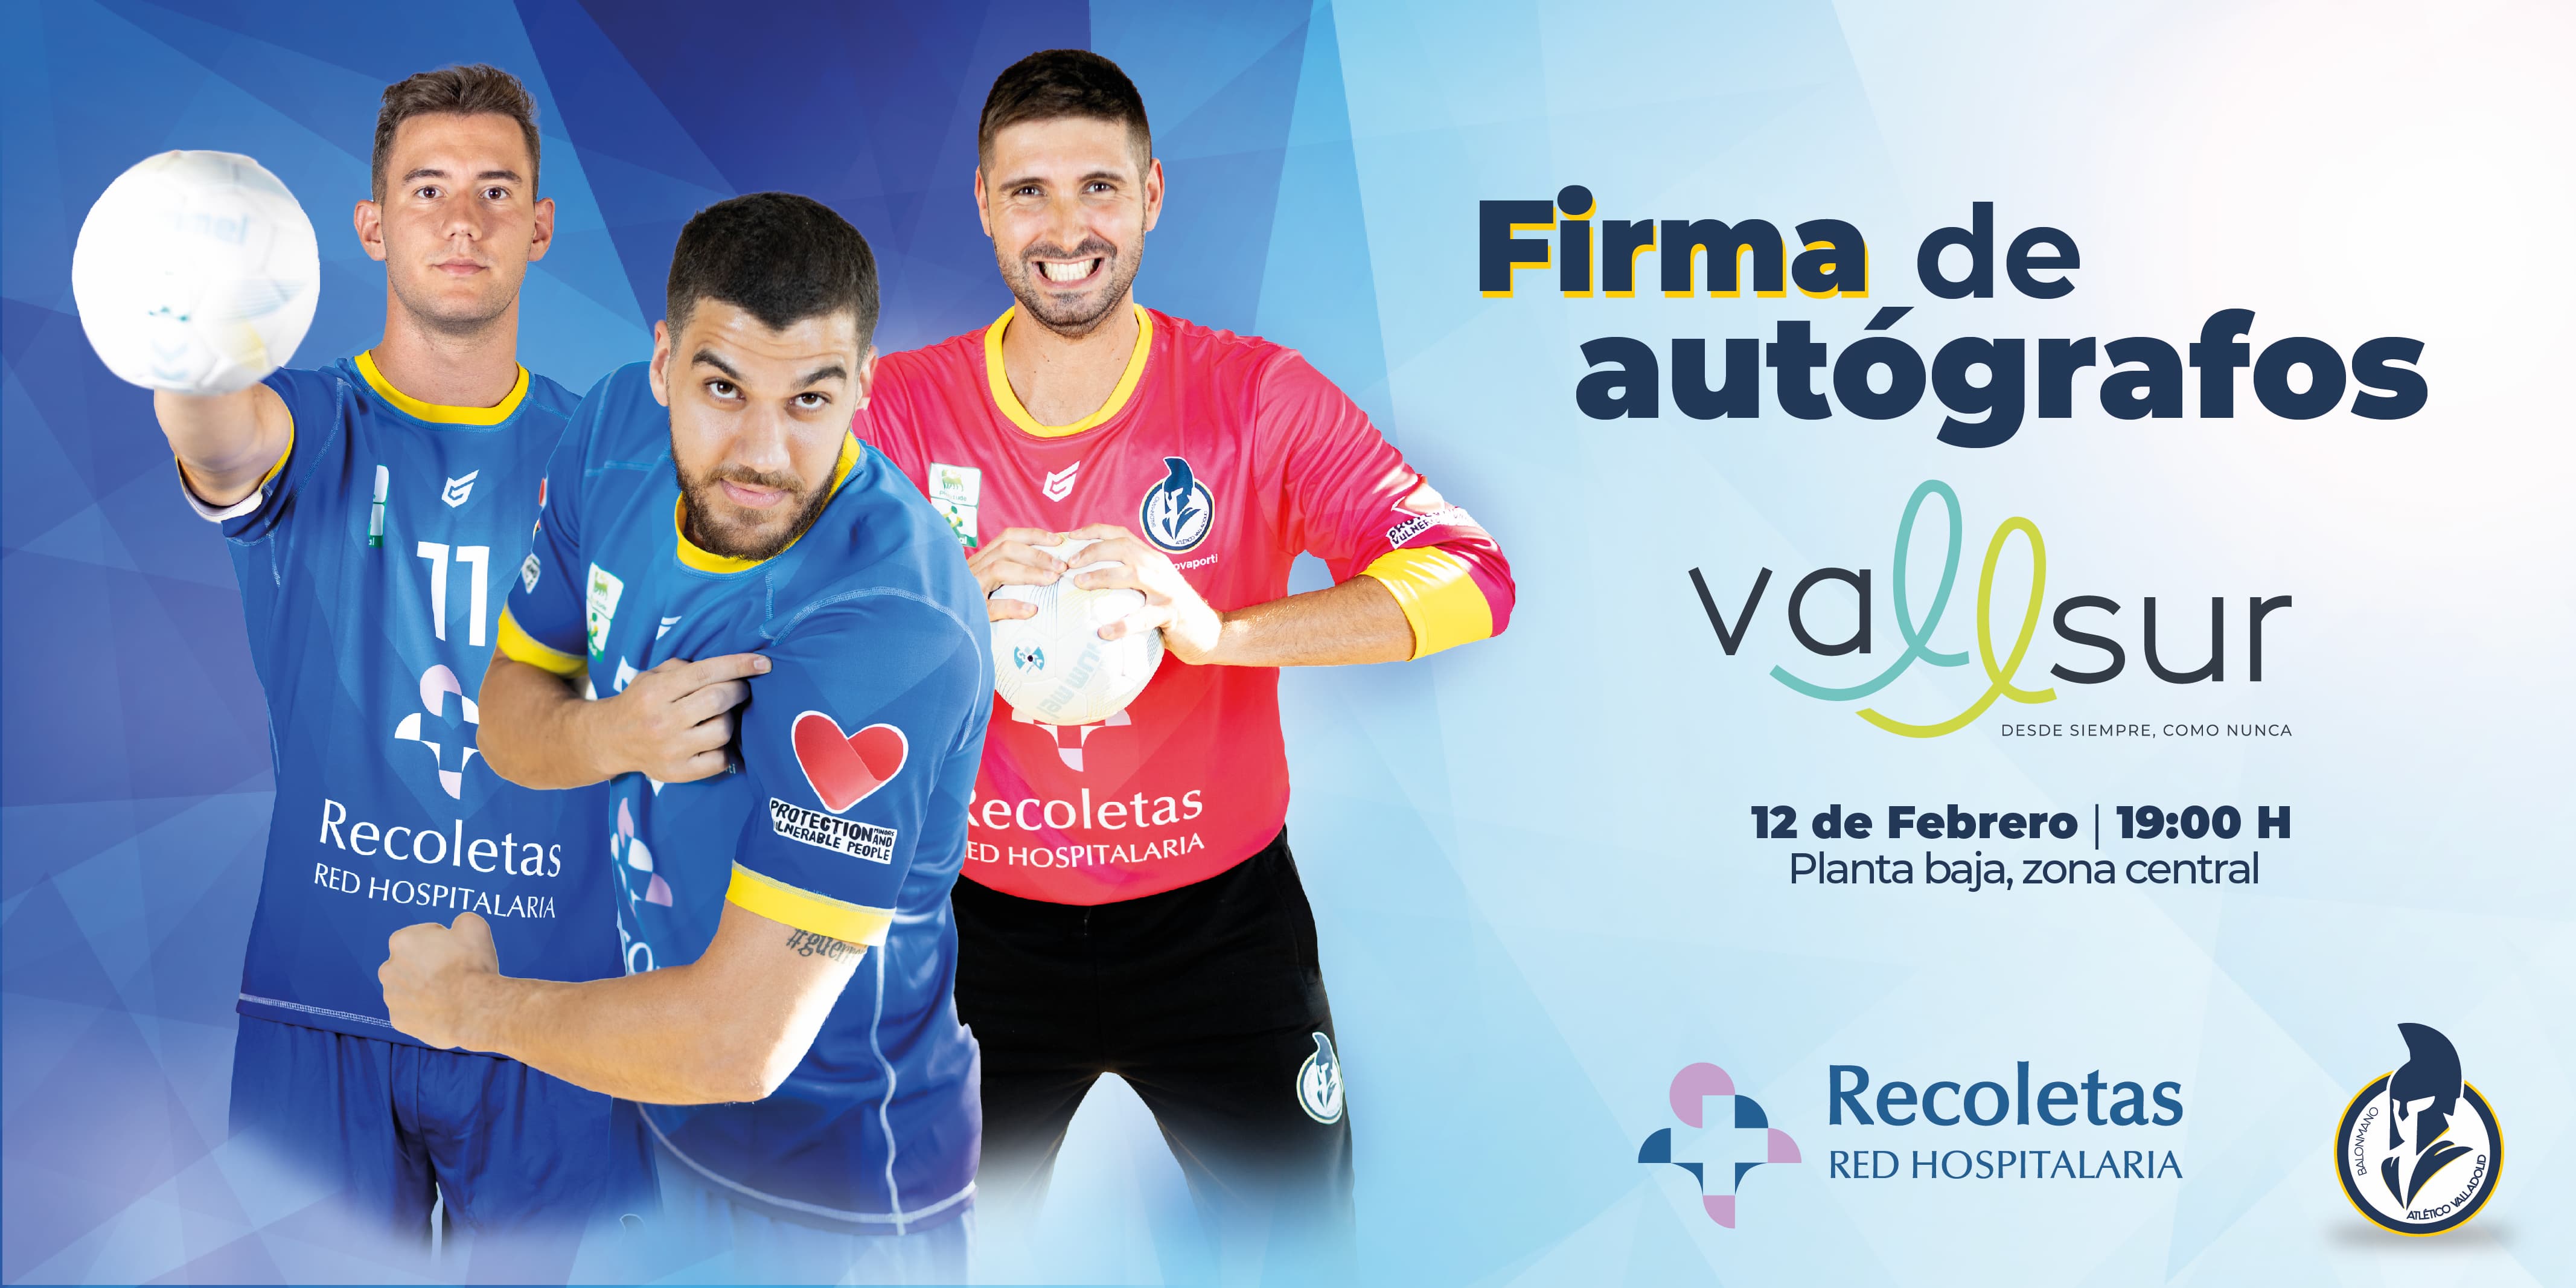 Firma de autógrafos de los jugadores del Recoletas Atlético Valladolid en Vallsur | Galería 1 / 1